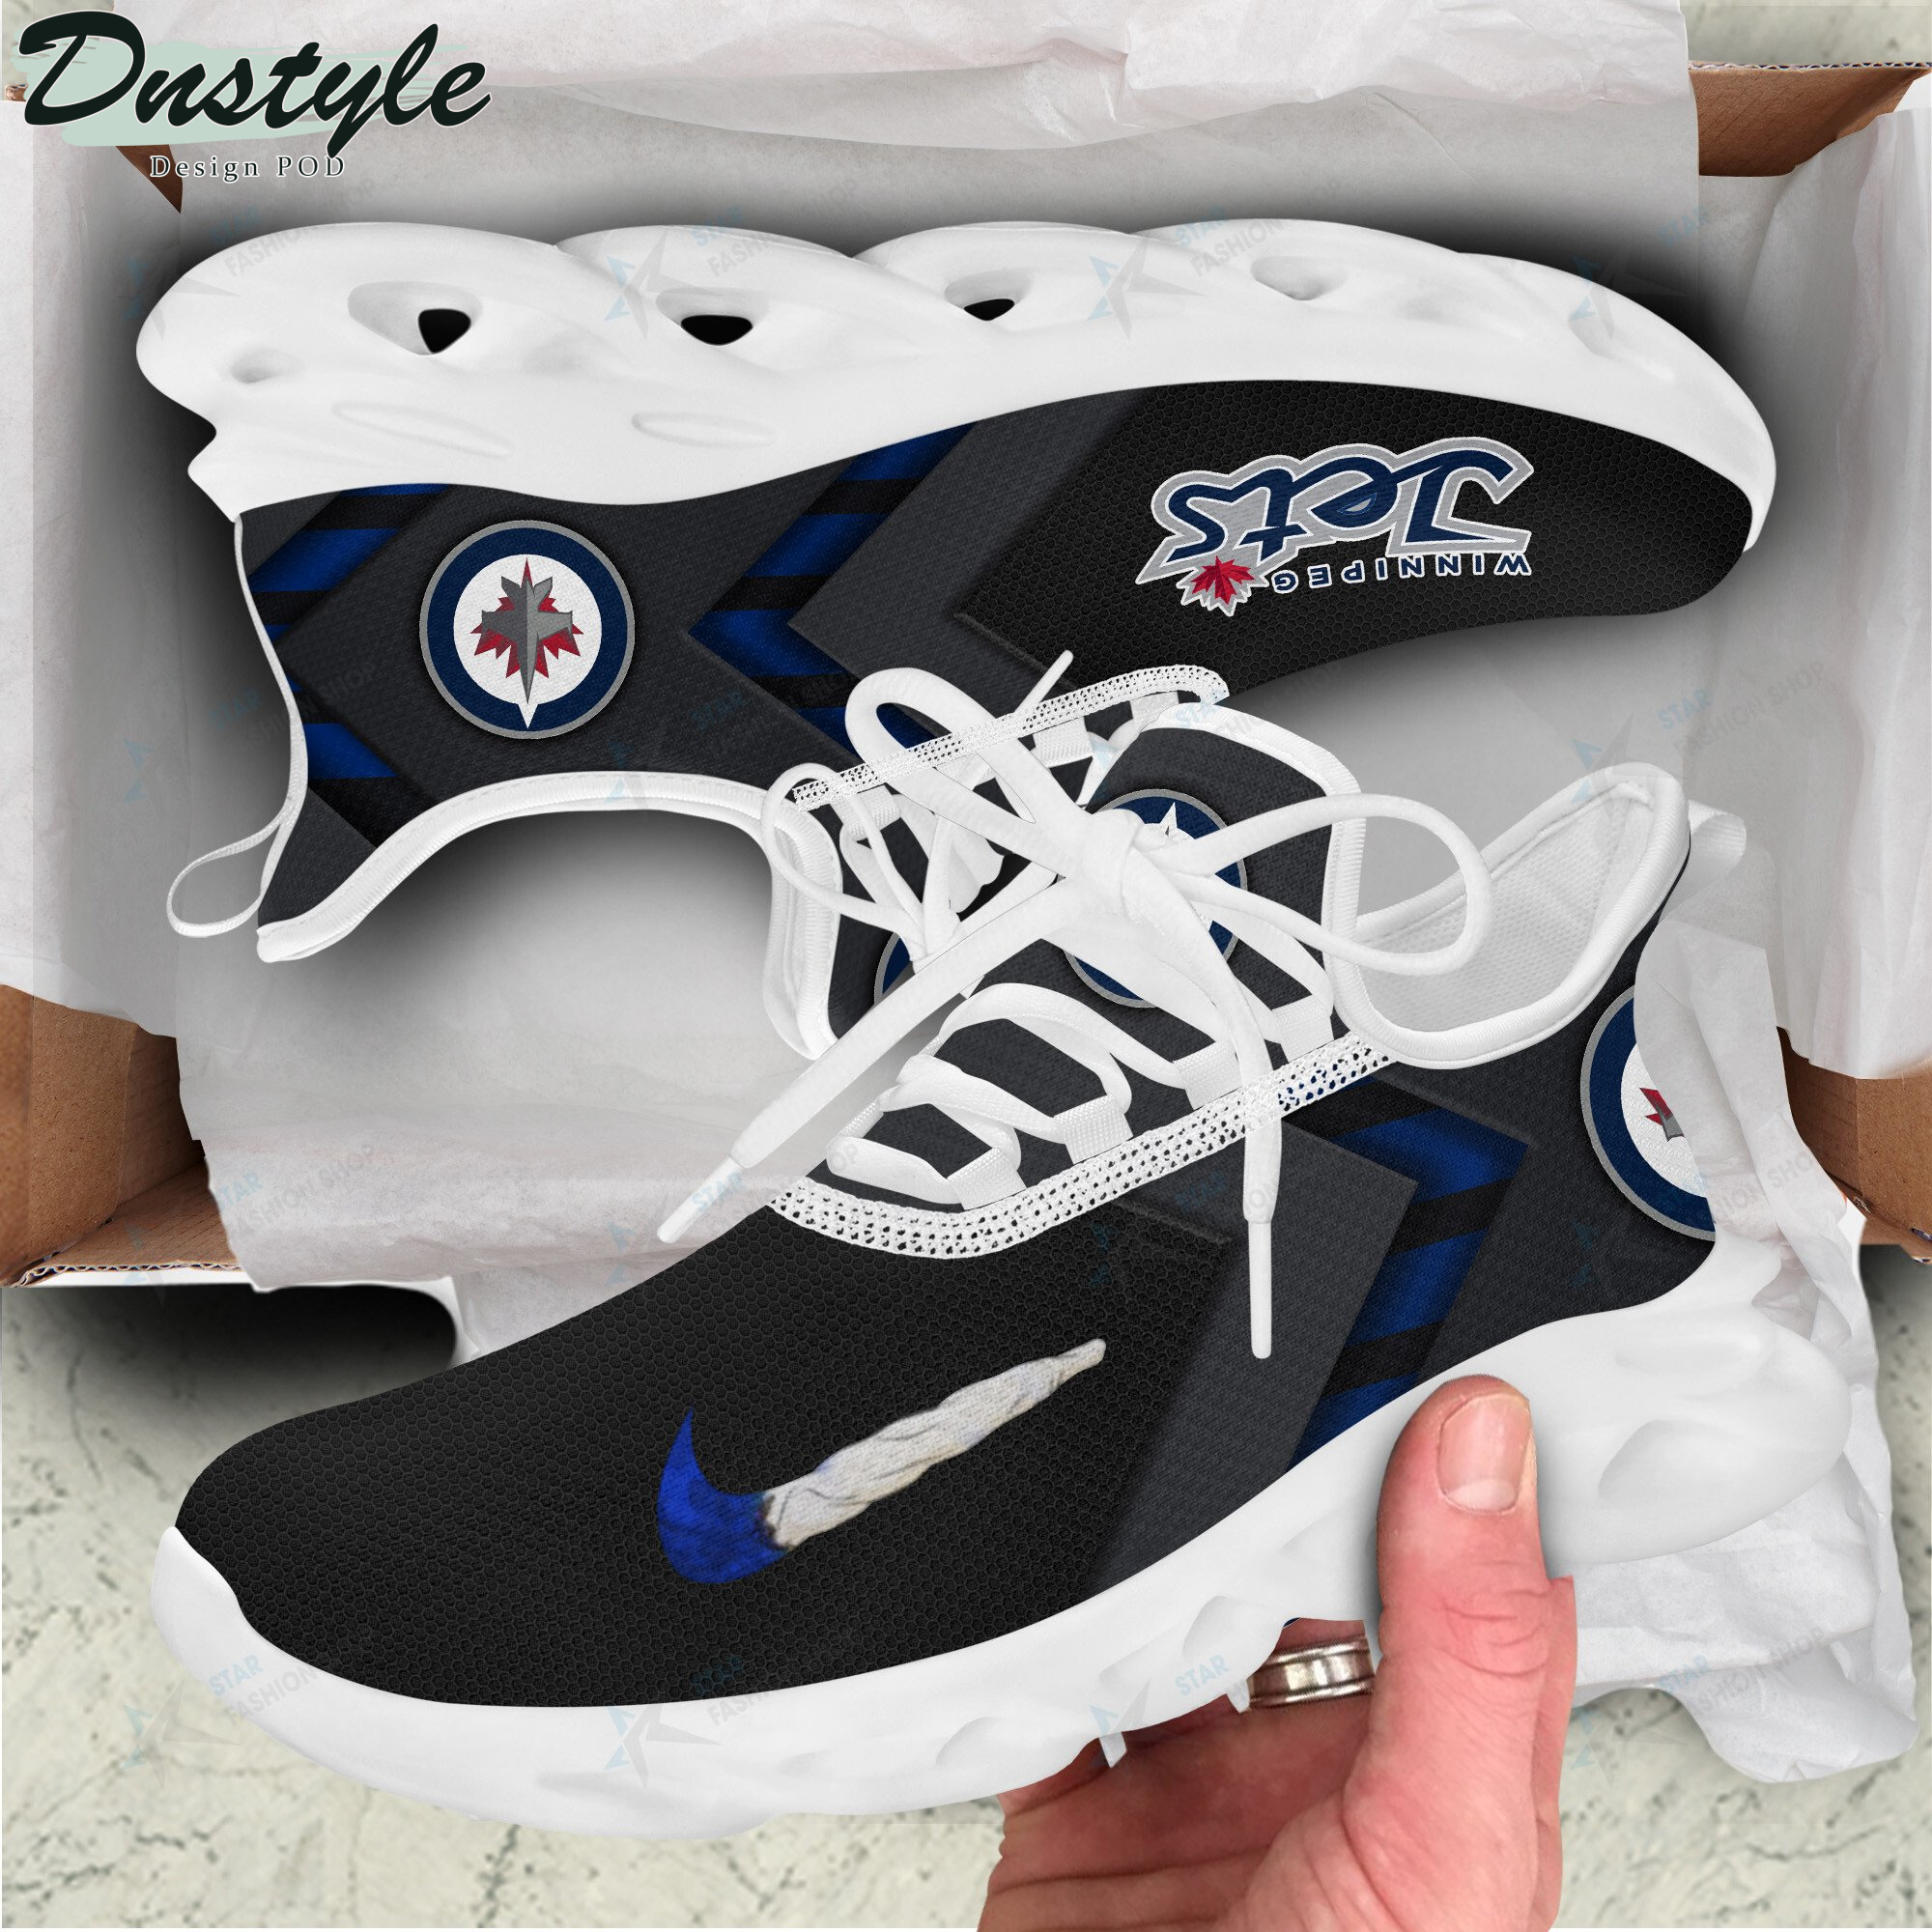 Winnipeg Jets max soul shoes